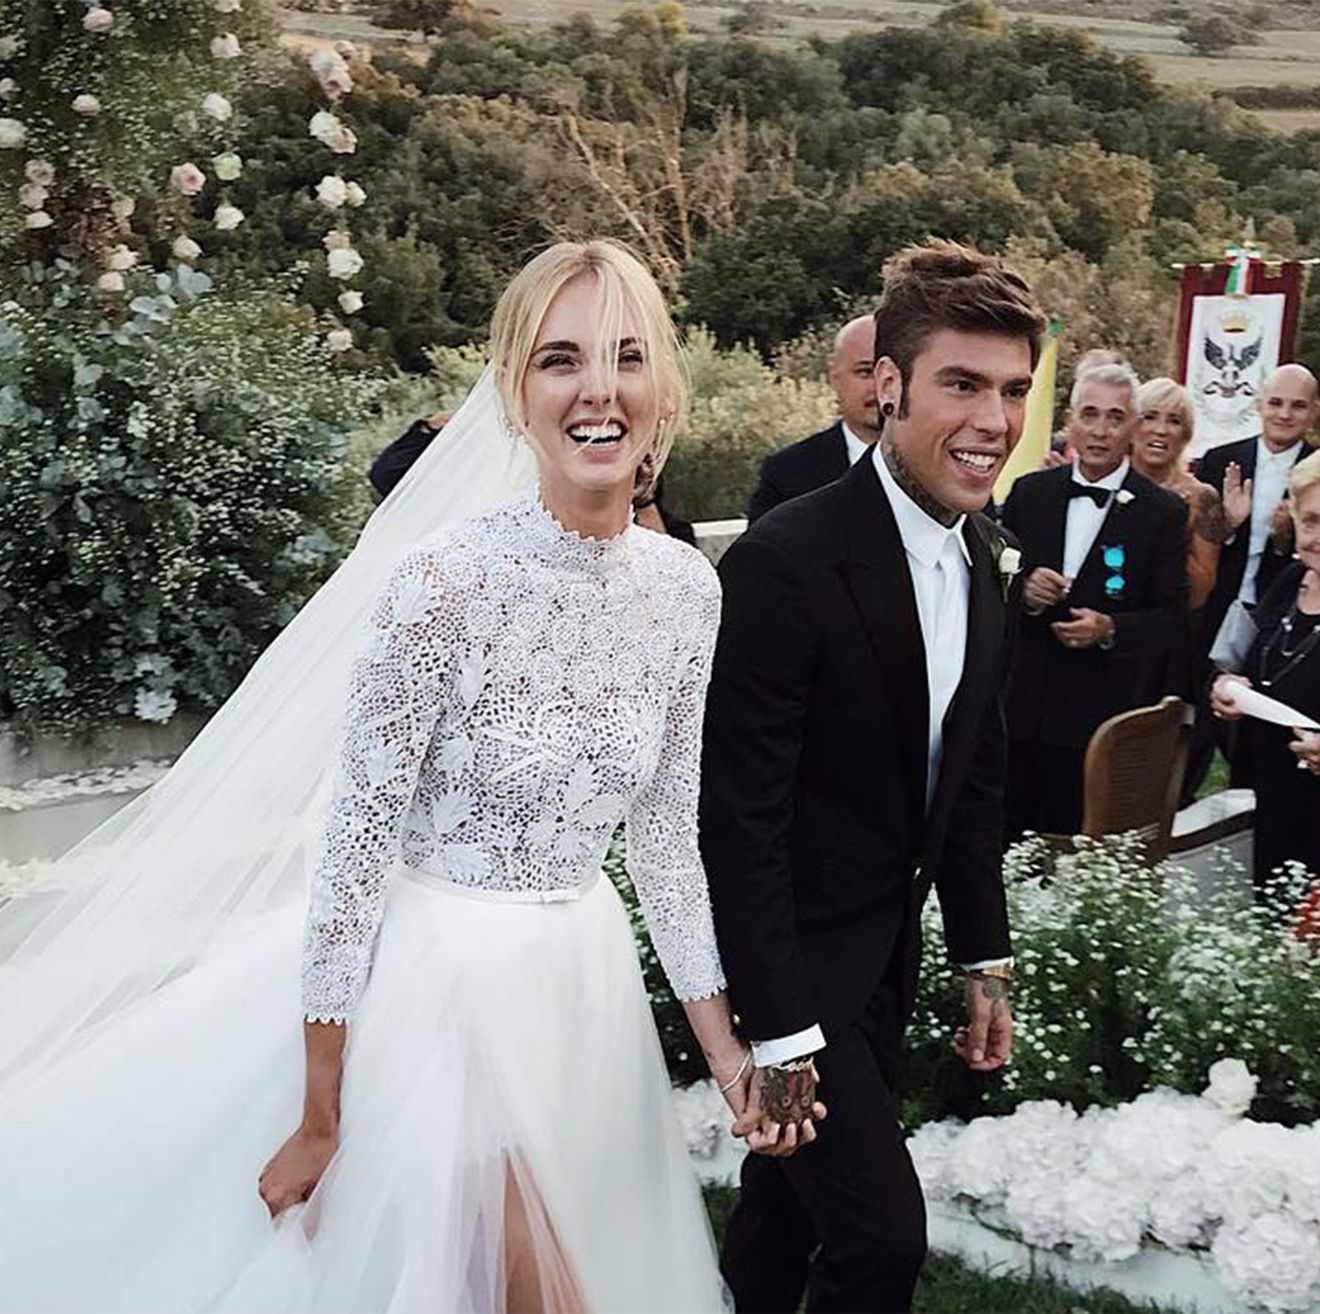 Chiara Ferragni comparte en Instagram su reacción al probarse por vez su vestido de novia de Dior - Chiara Ferragni lloró al verse vestido de por primera vez